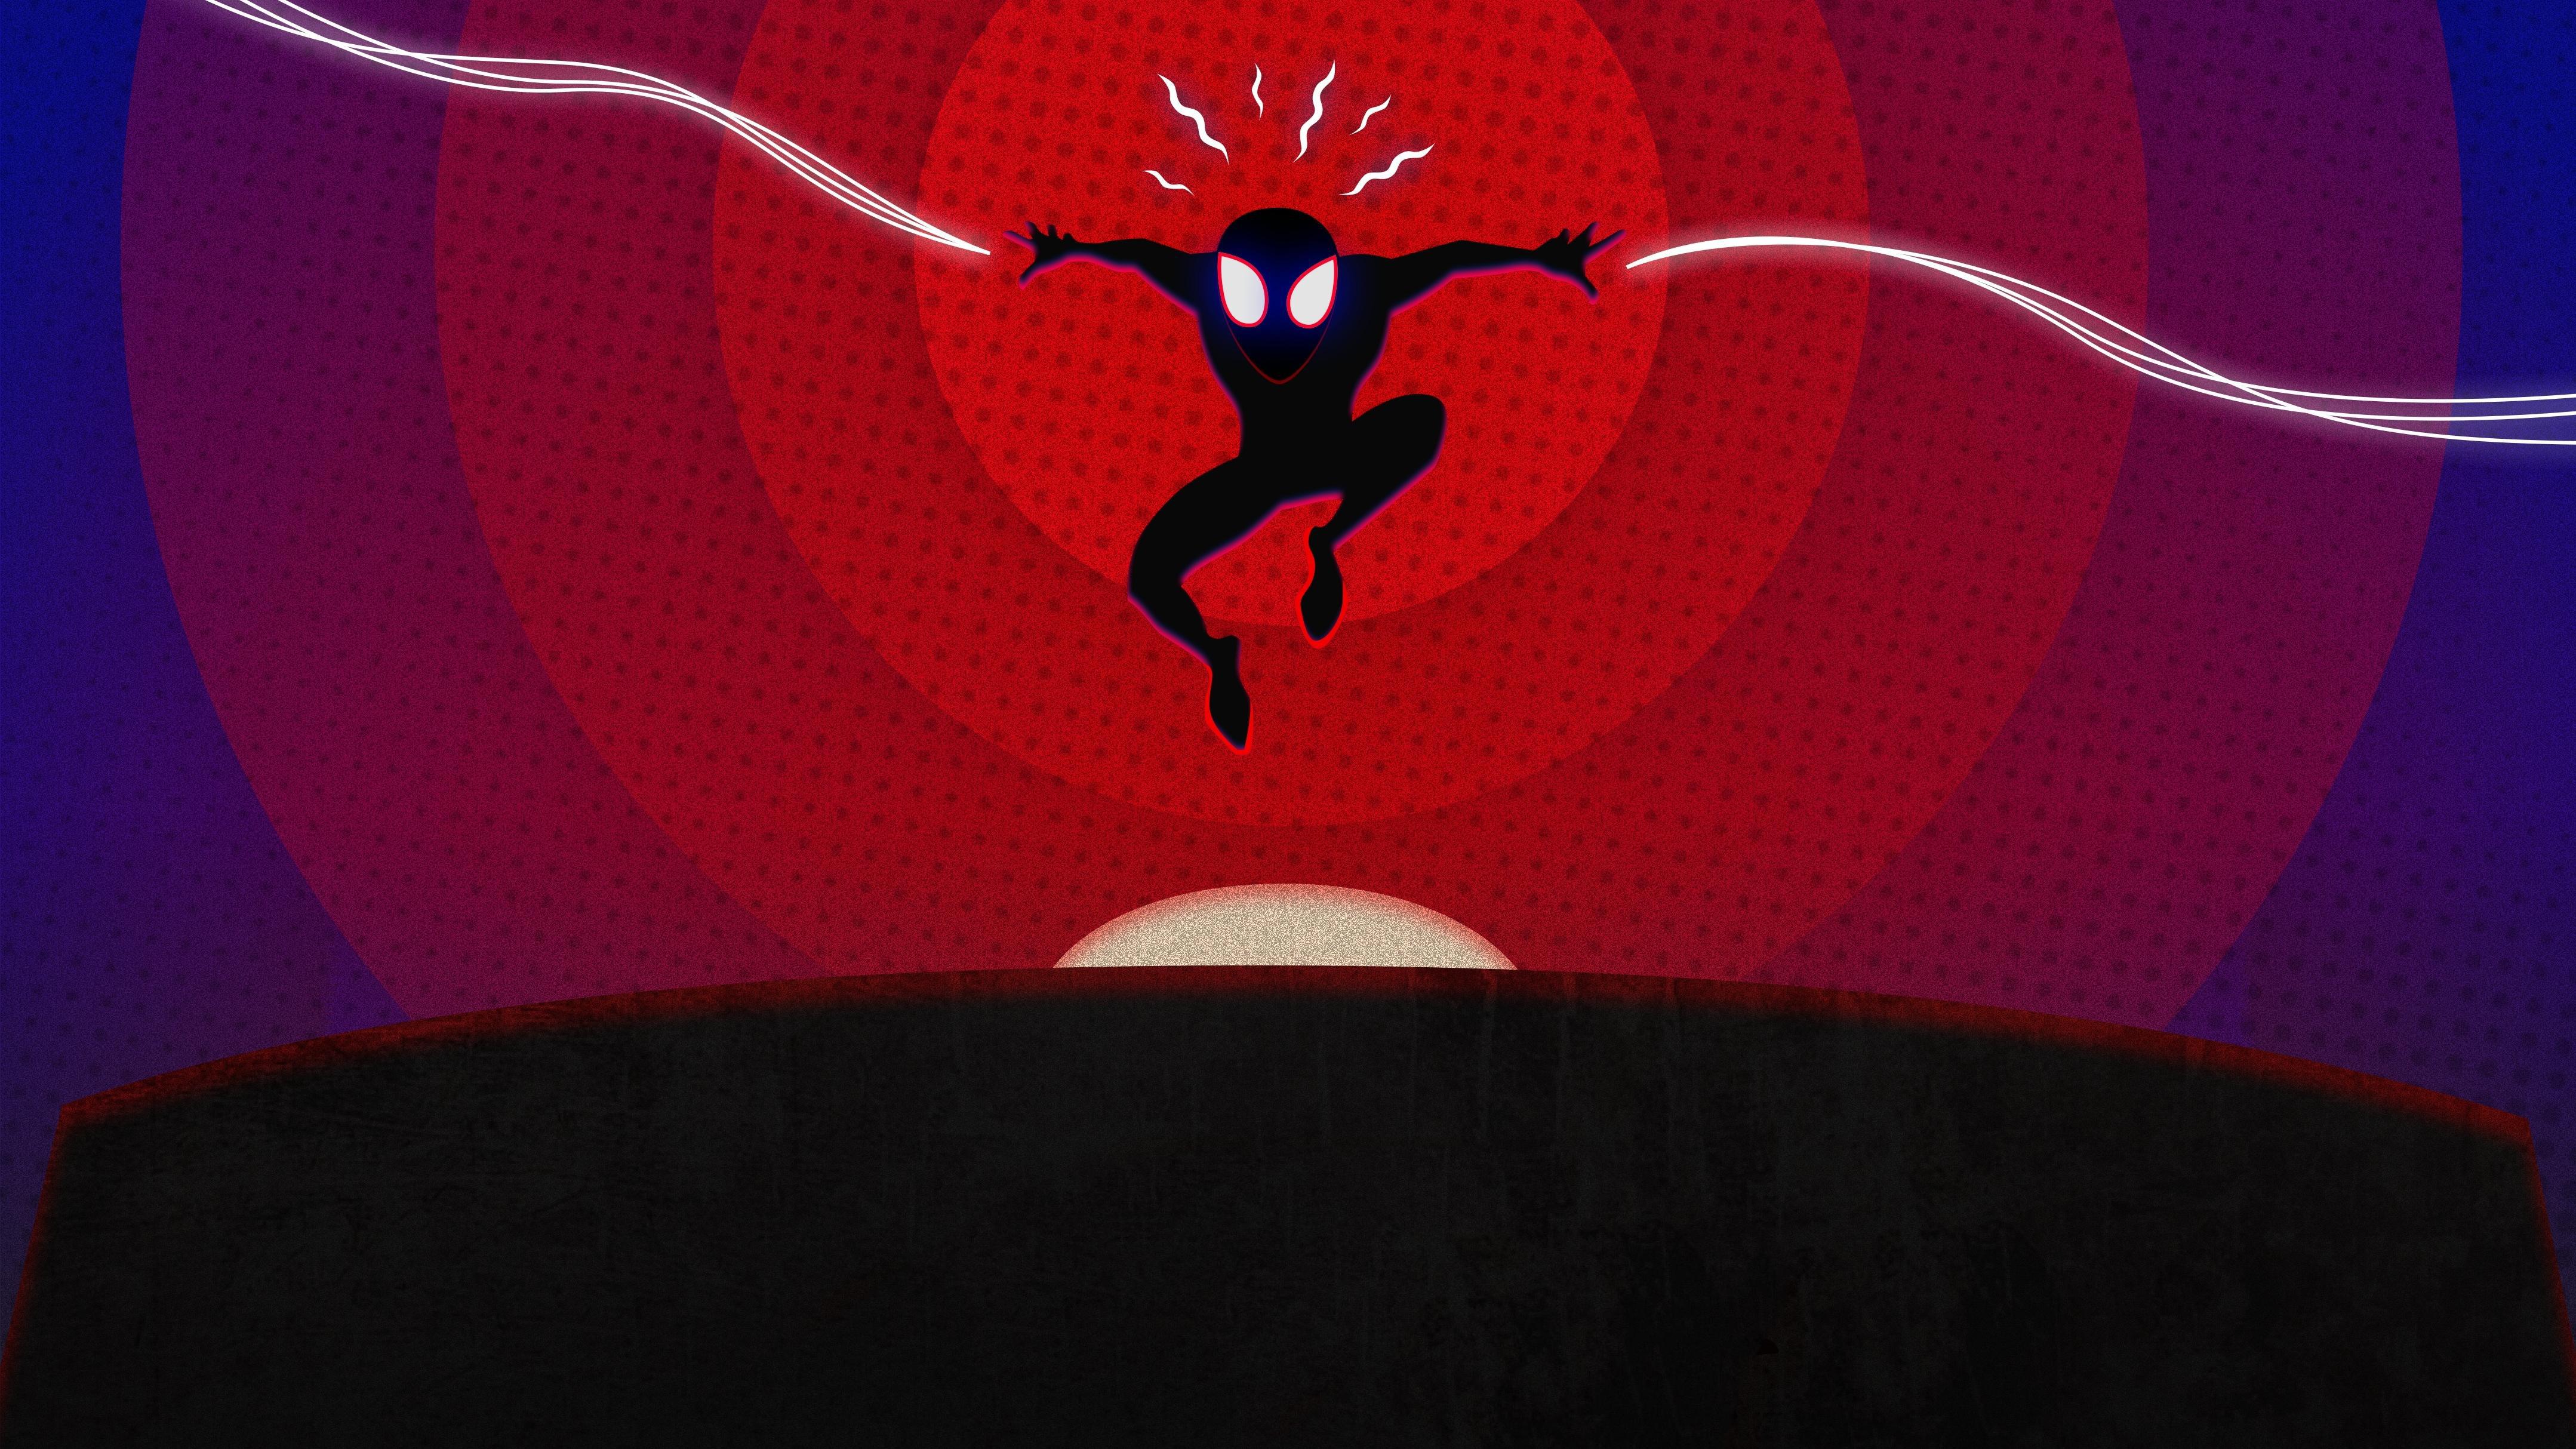 Wallpaper Spider Man: Into The Spider Verse, Artwork, 4K, Movies